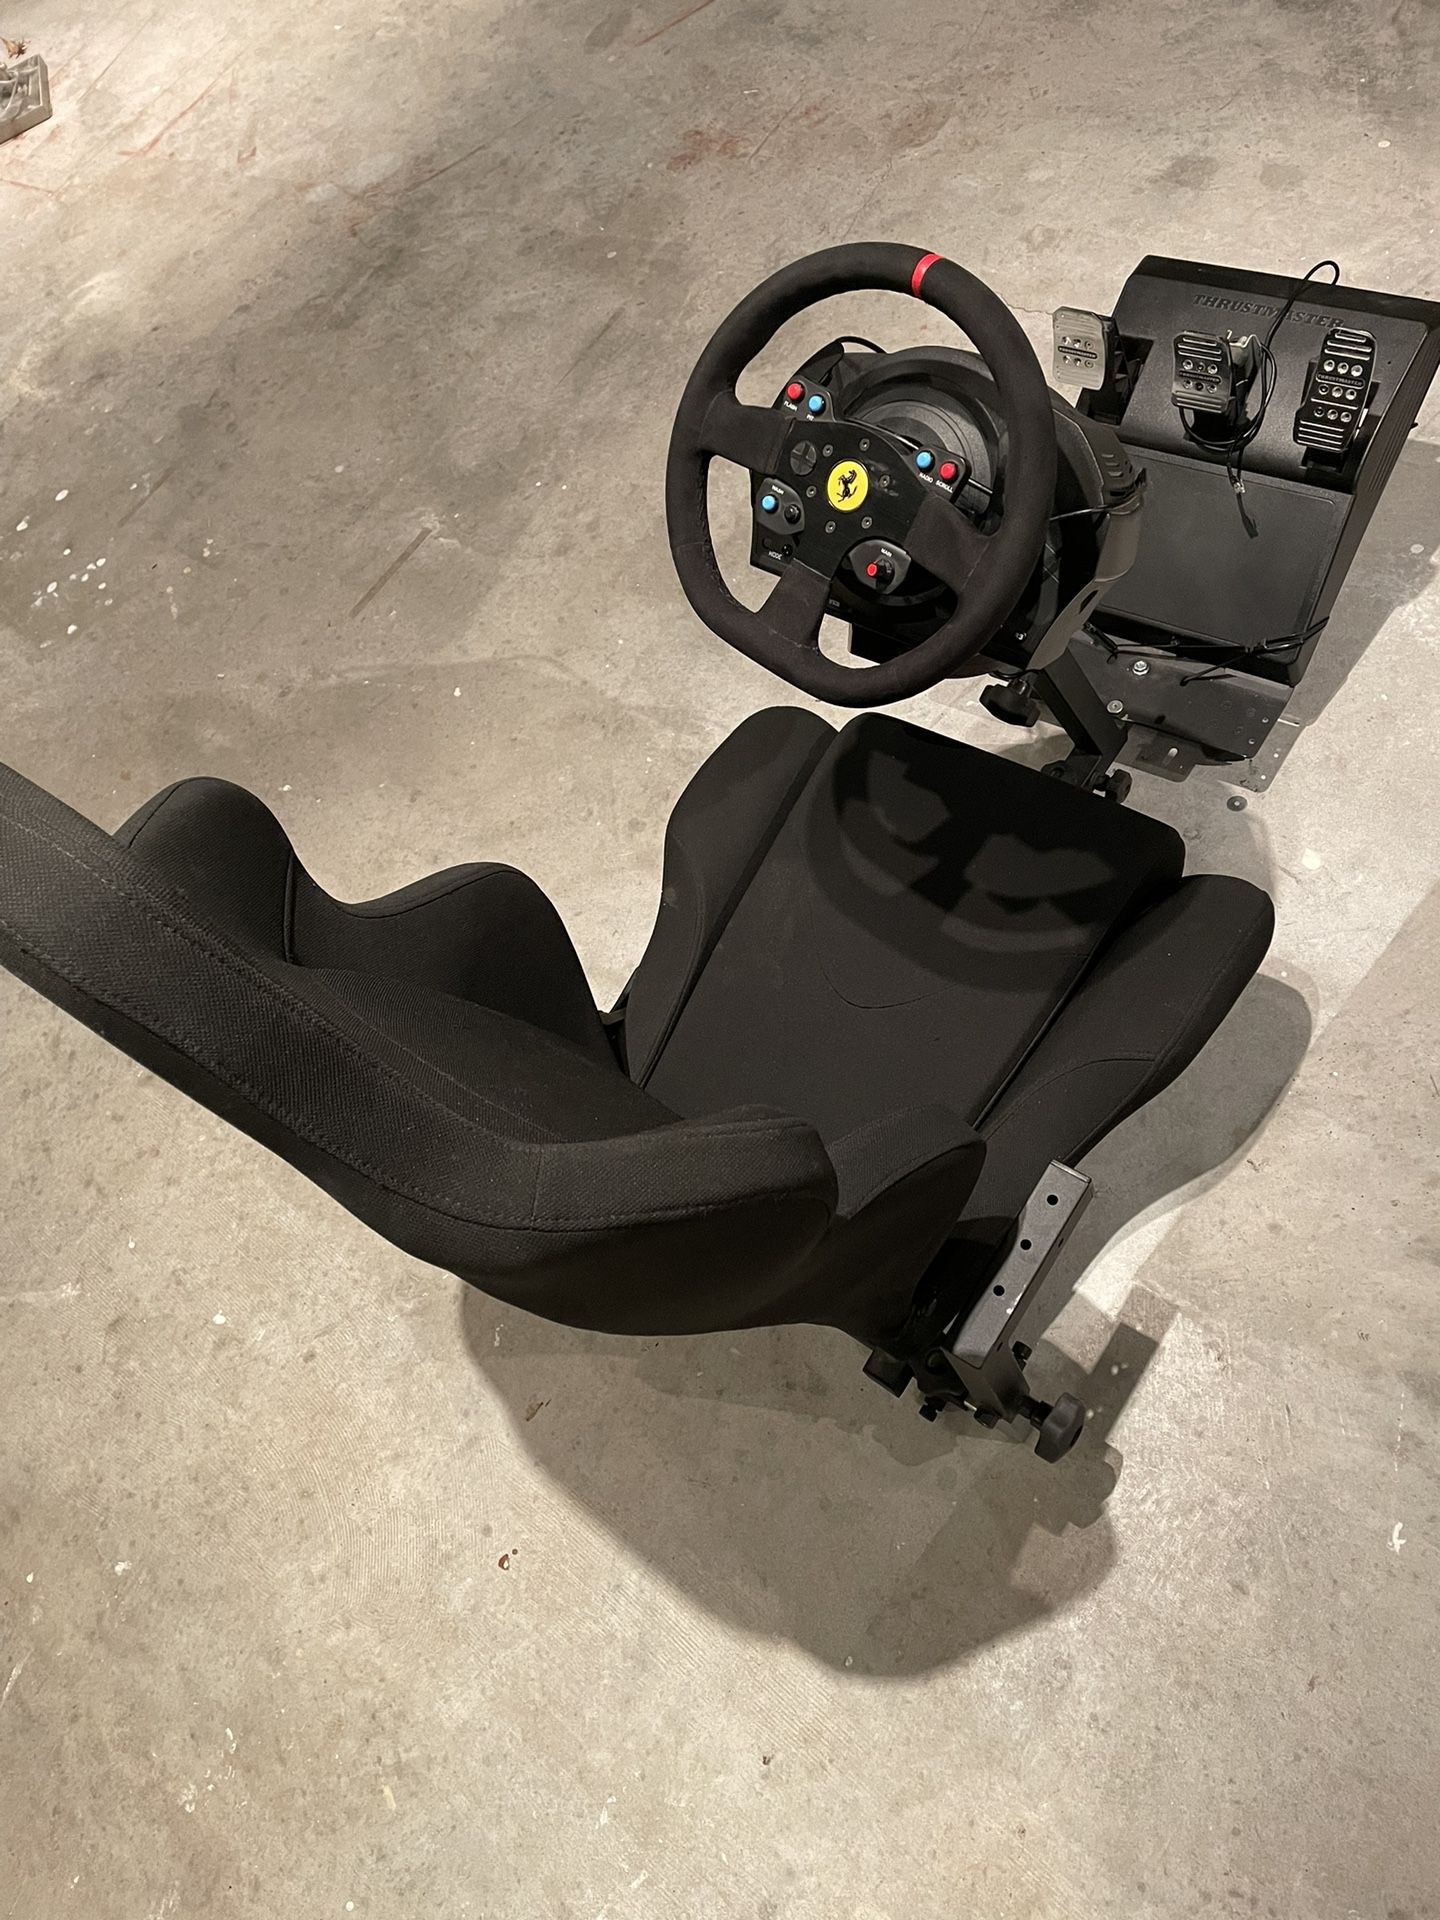 racing Simulator - T300 RS Integral- Ferrari Edition. Plus Several pS4 Racing Games